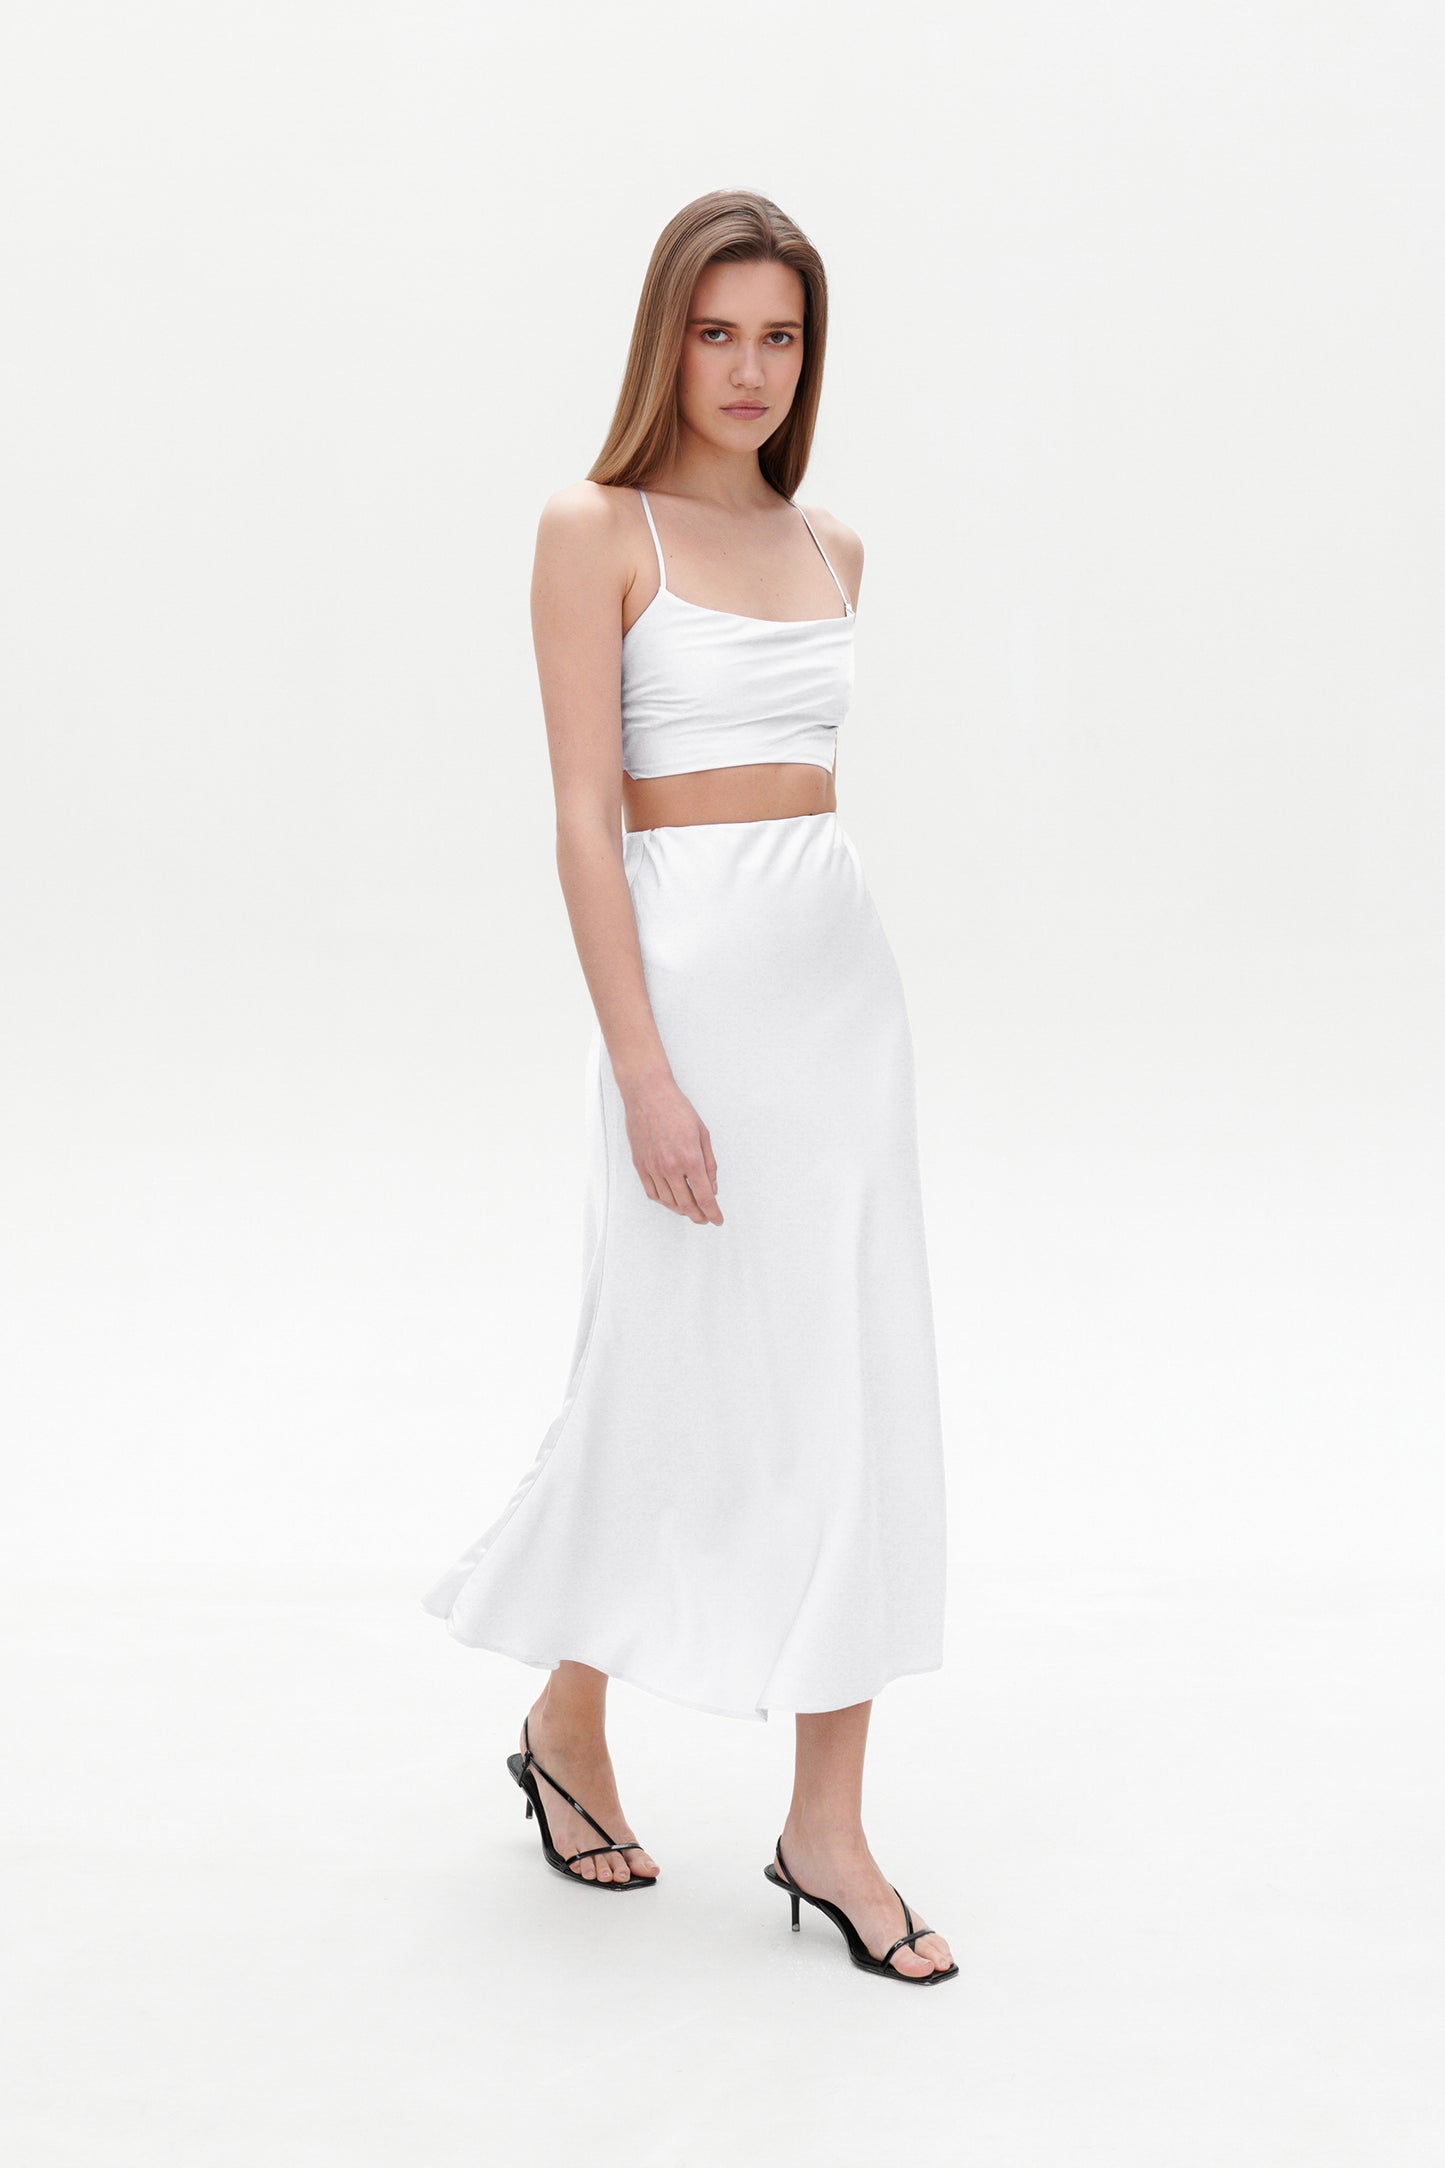 White satin skirt